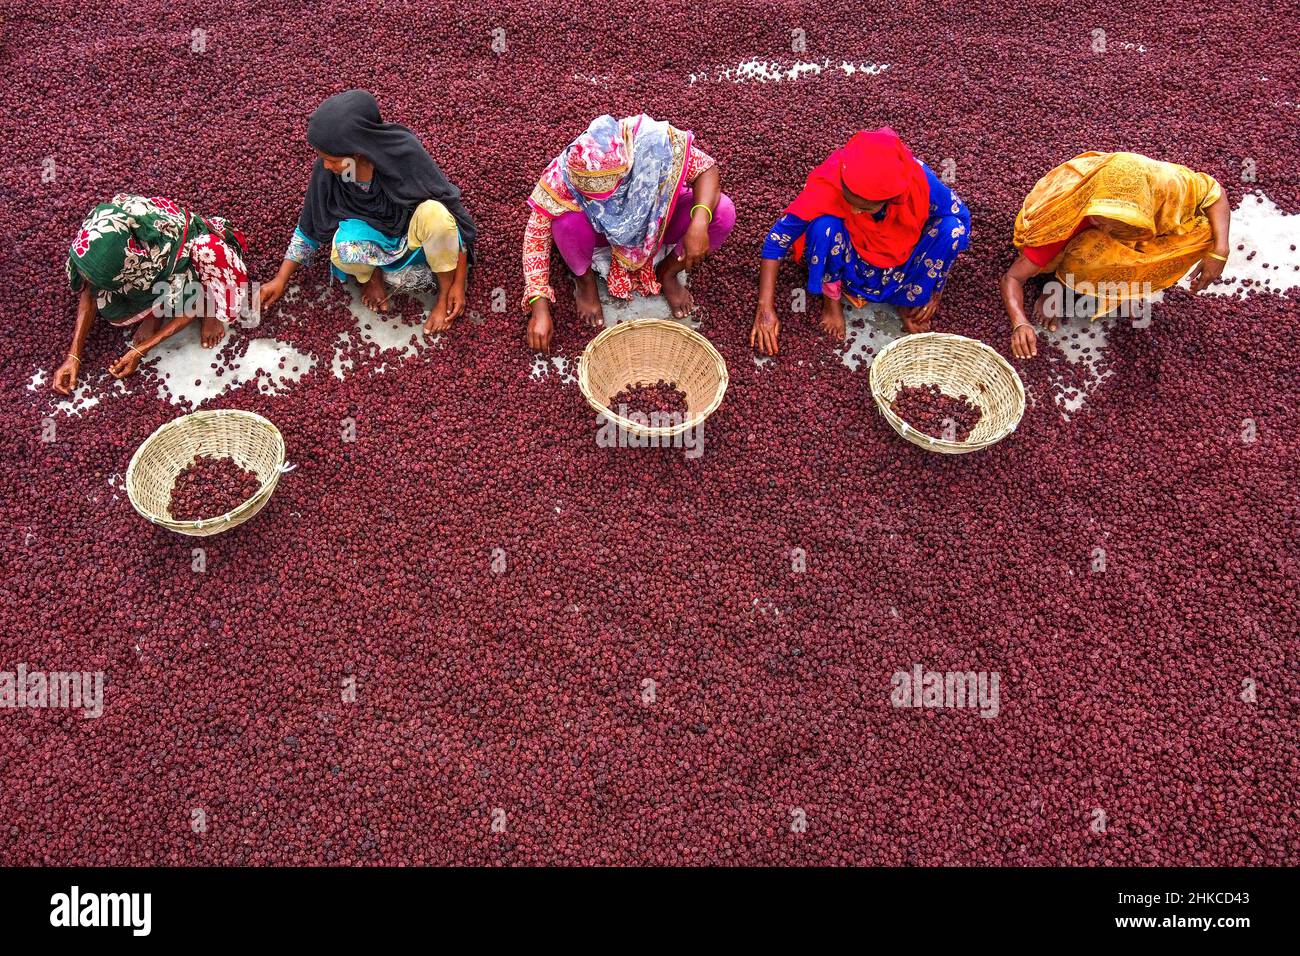 Teams von Frauen arbeiten unter der prallen Sonne und sortieren nach einer rasant geernteten Ernte Tausende von Jujube-Früchten. Stockfoto